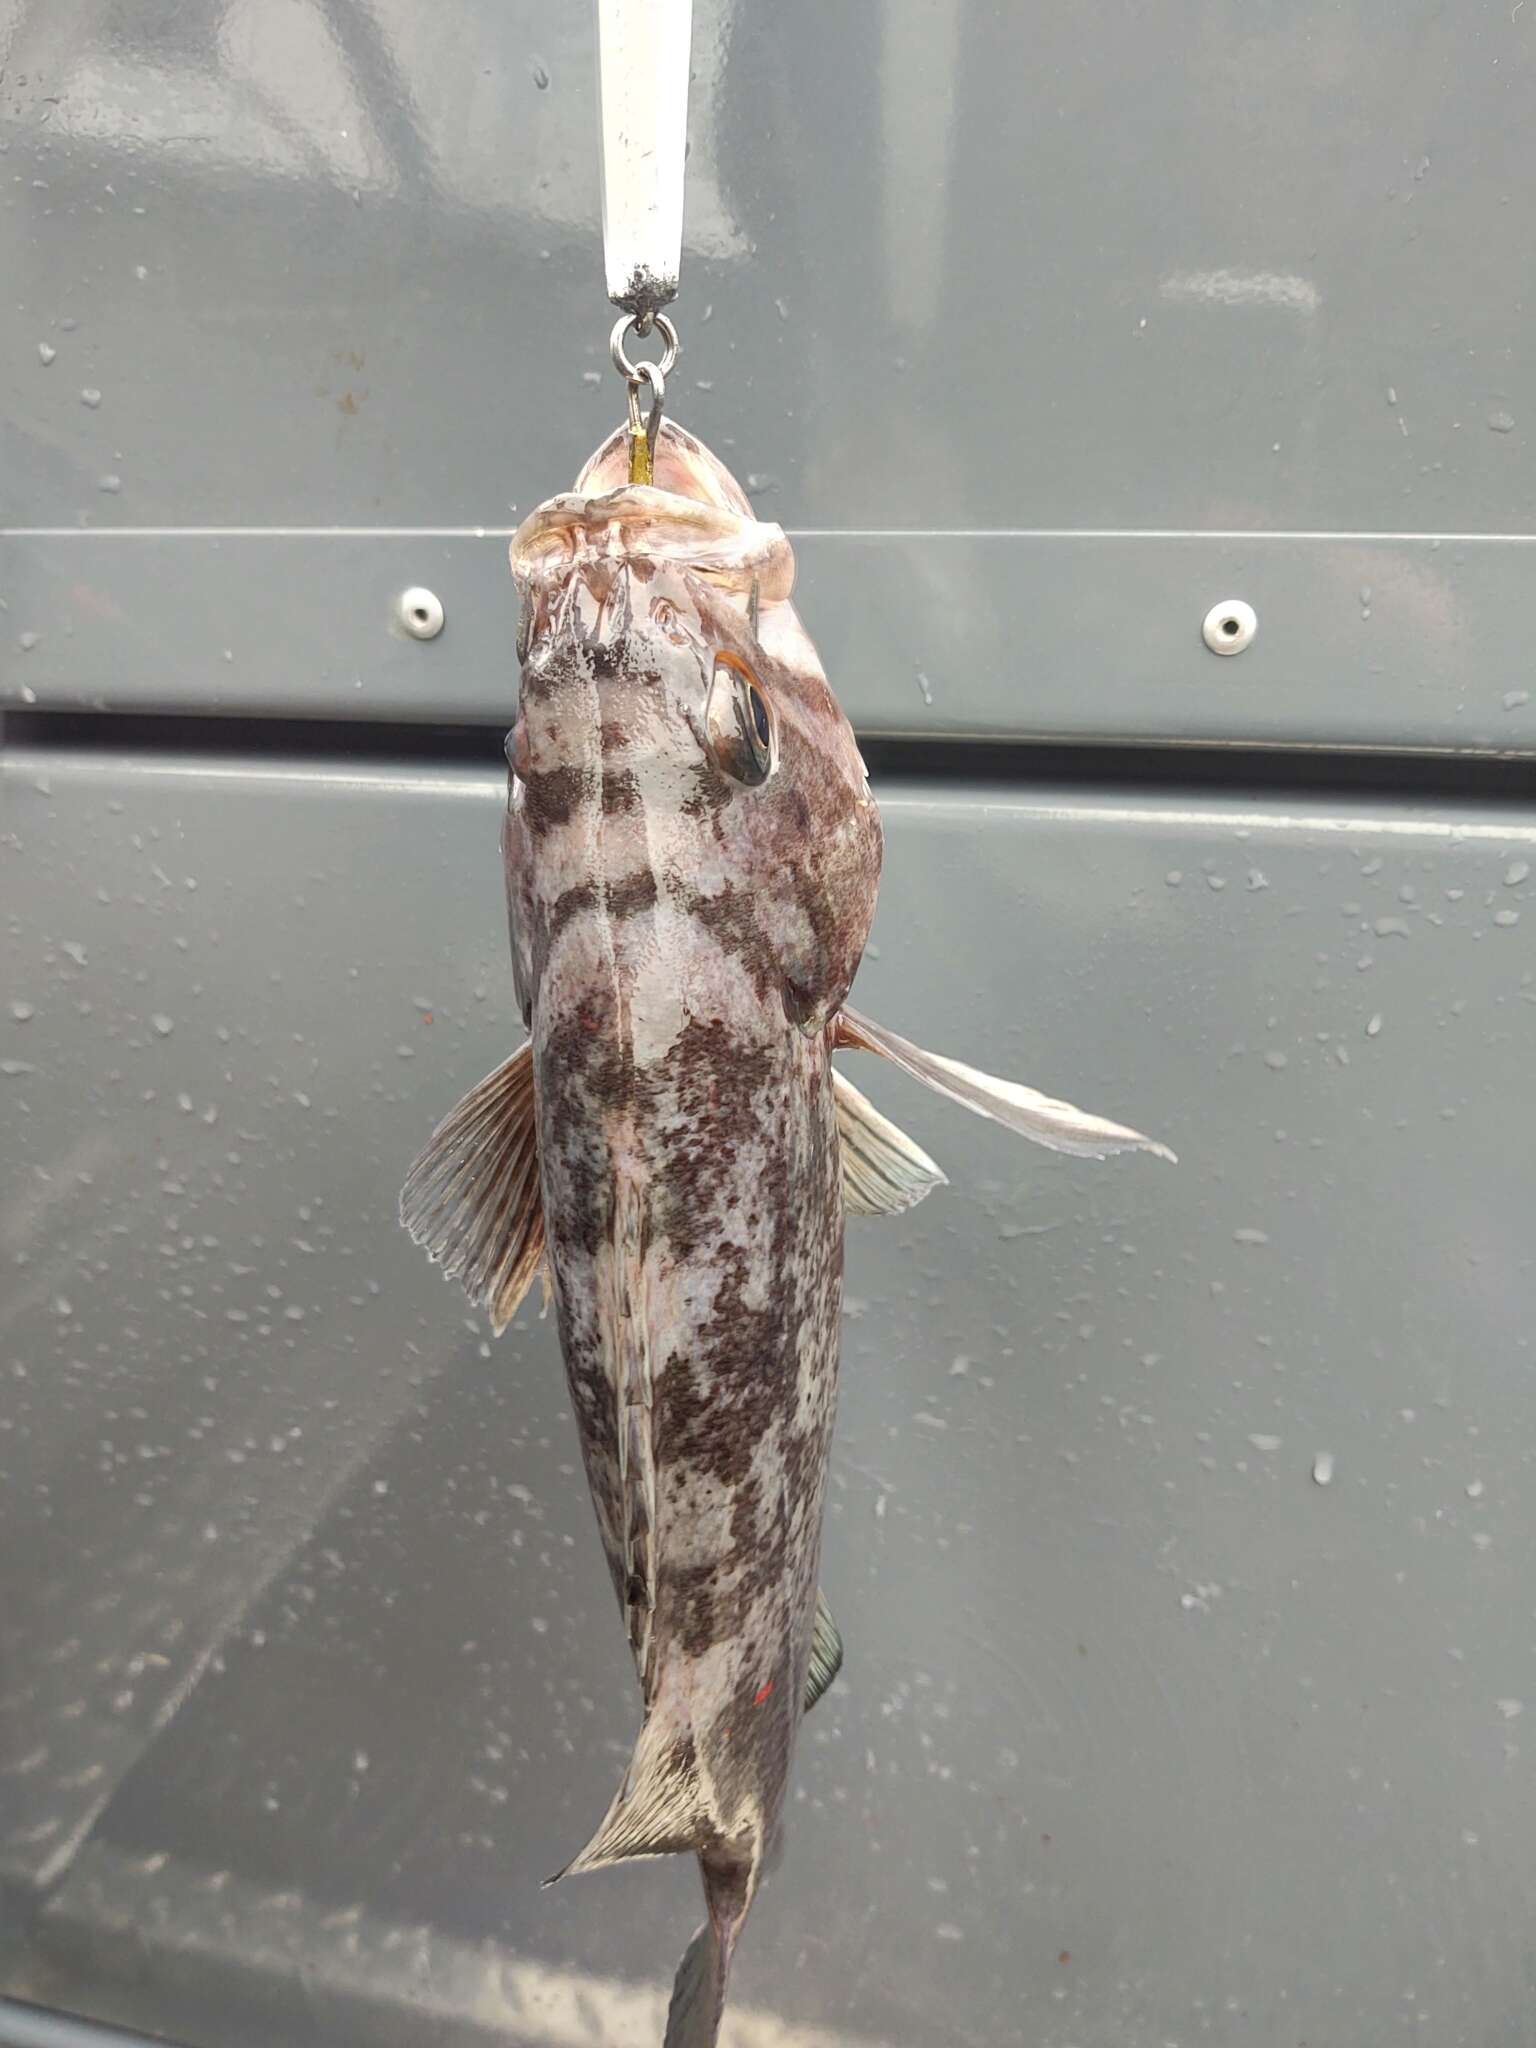 Image of Deacon rockfish